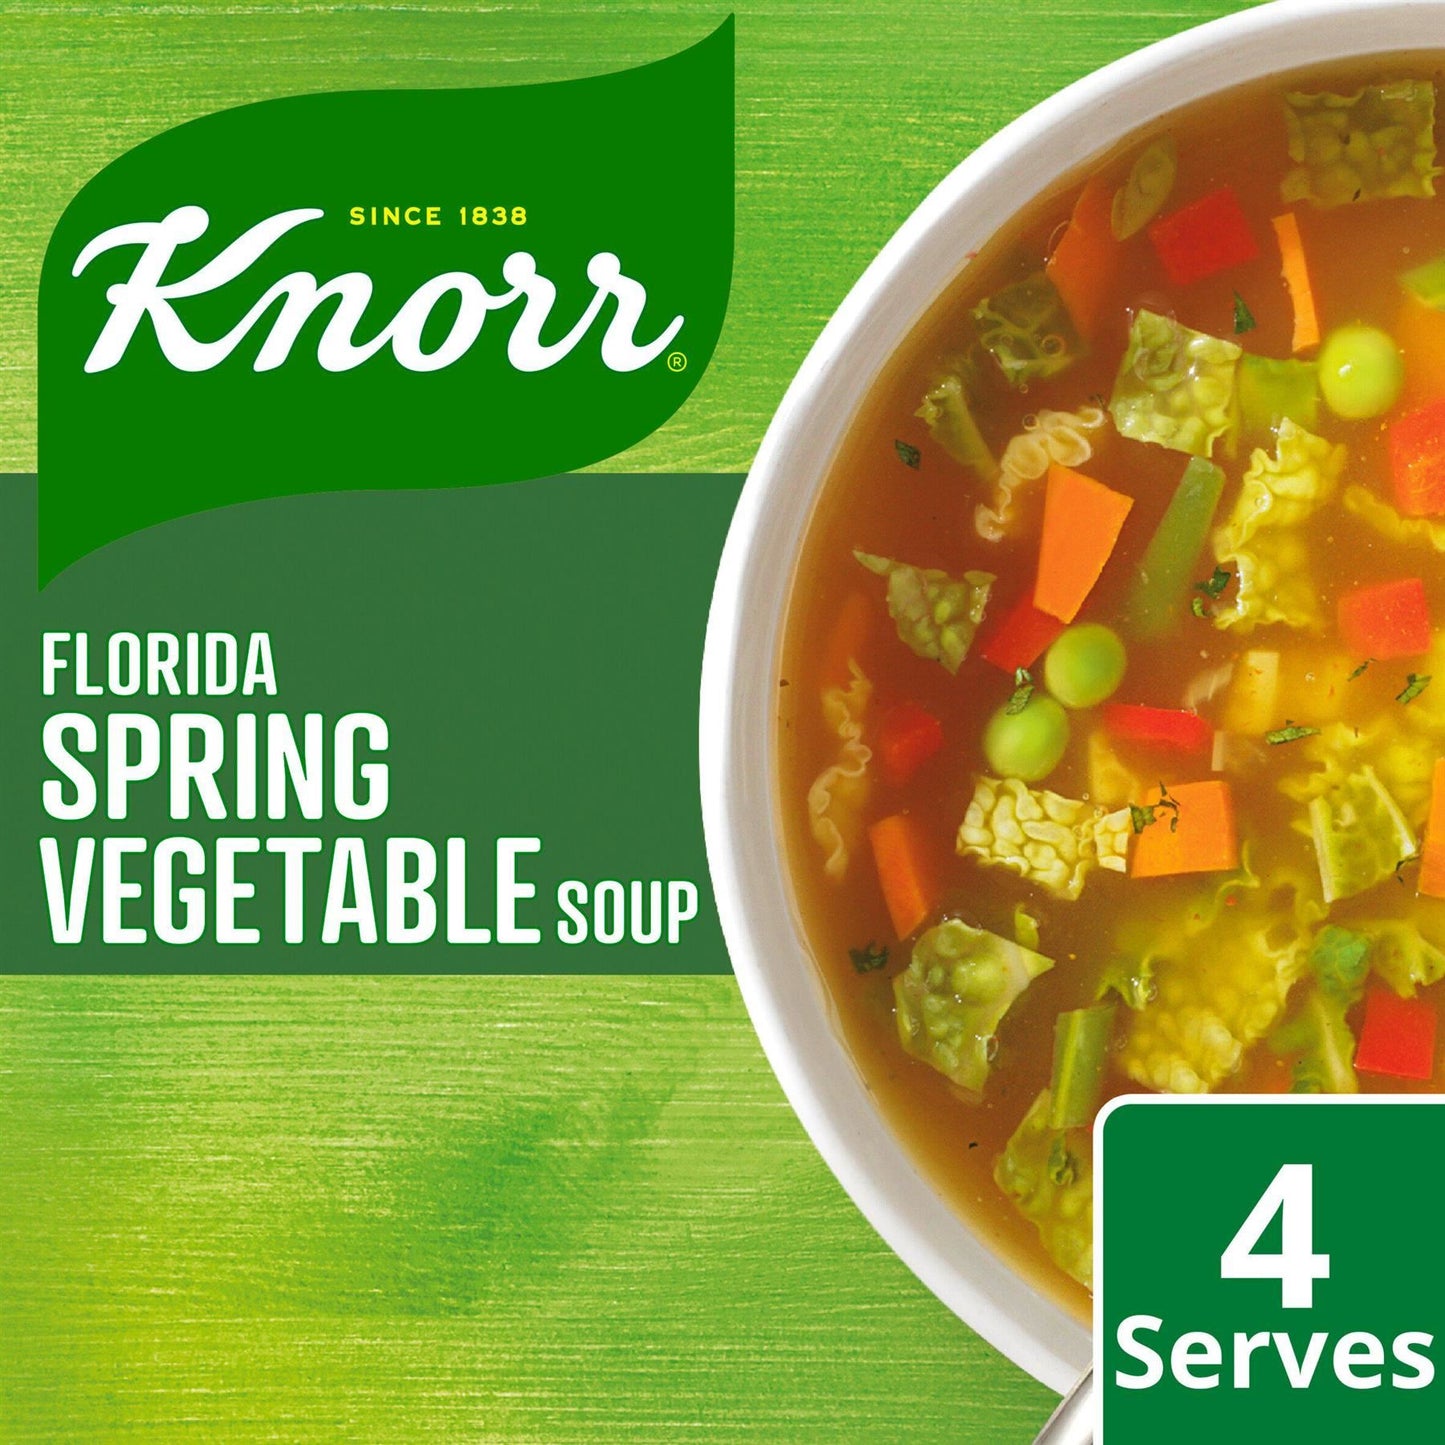 Knorr Florida Spring Vegetable Soup Sachet 48g